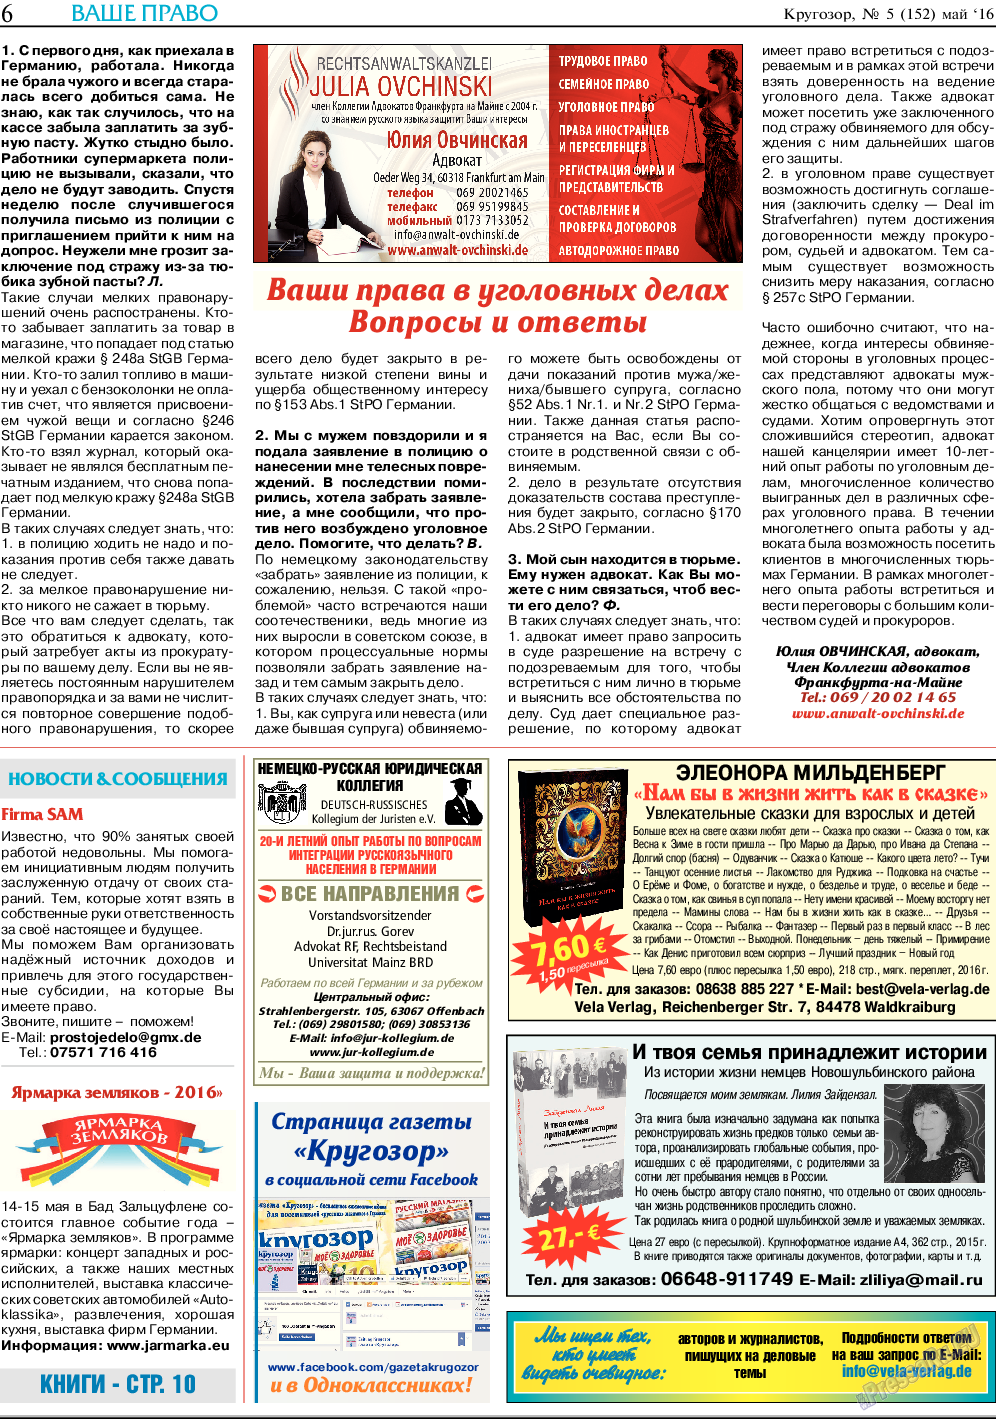 Кругозор (газета). 2016 год, номер 5, стр. 6